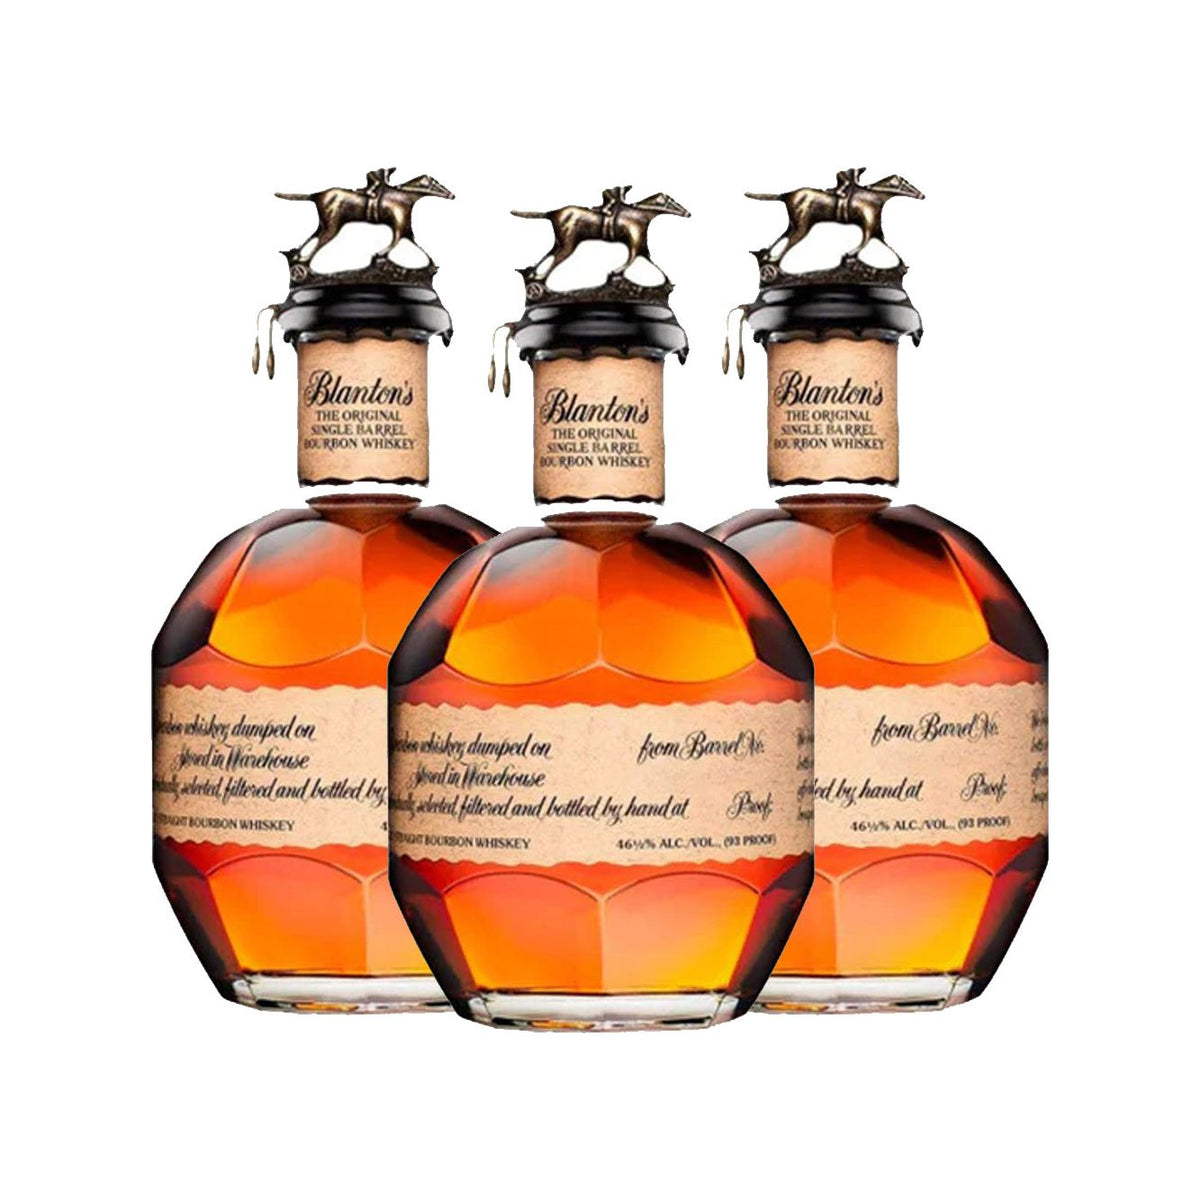 Blanton's Blanton's Single Barrel Bourbon Whiskey